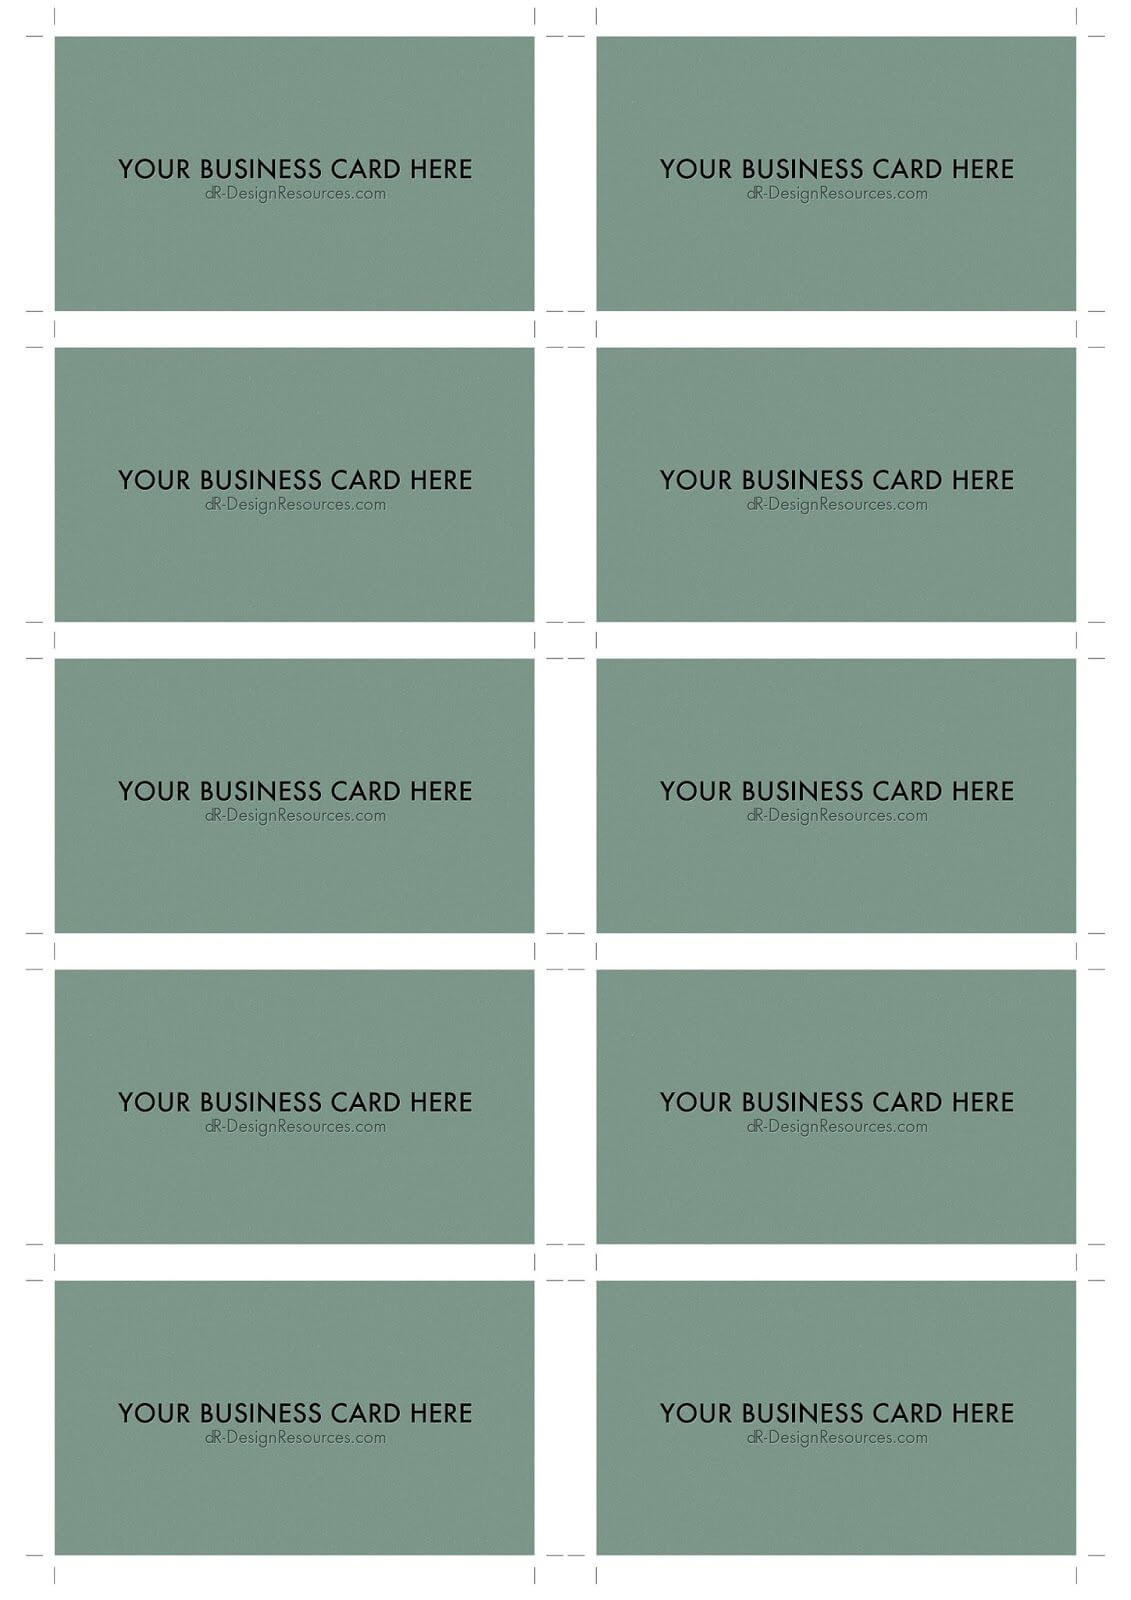 A4 Business Card Template Psd (10 Per Sheet) | Business Card In Photoshop Business Card Template With Bleed